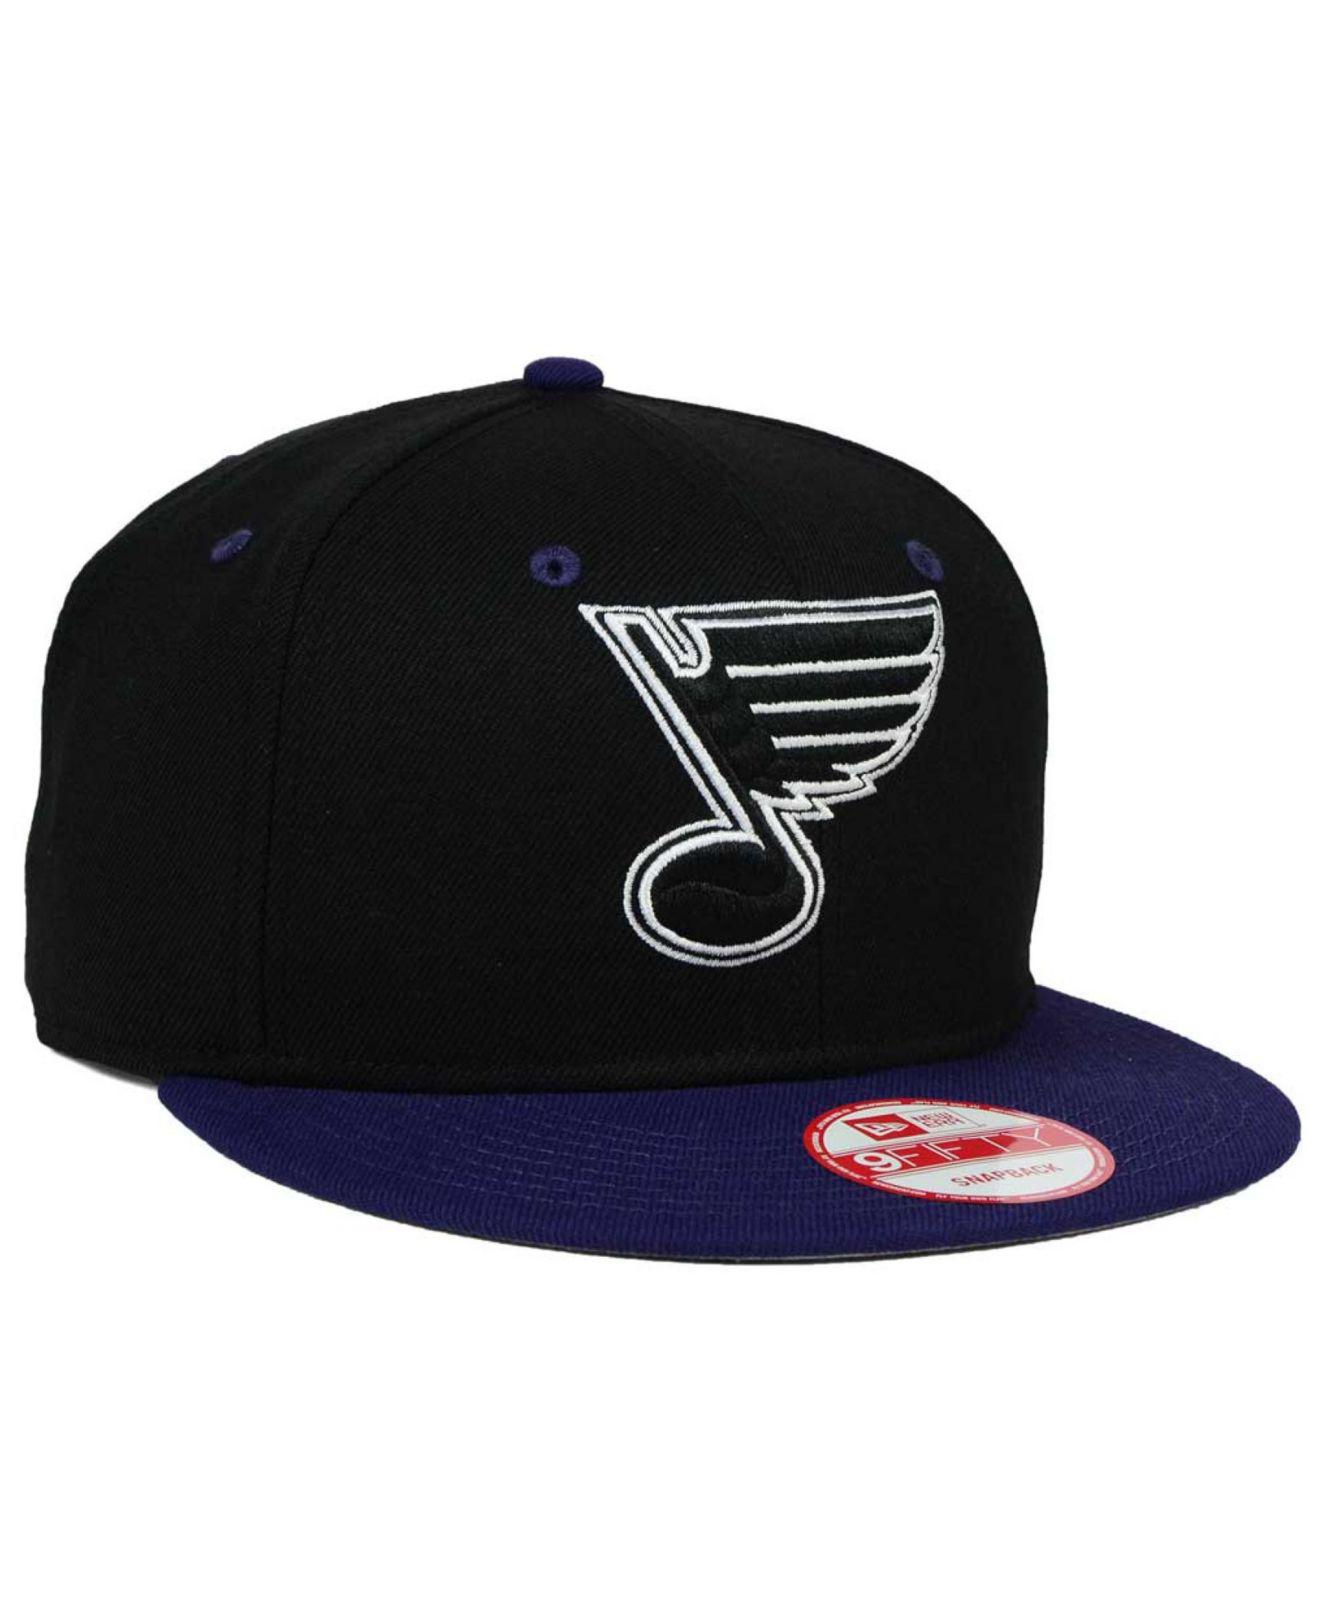 KTZ St. Louis Blues Black White Team Color 9fifty Snapback Cap for